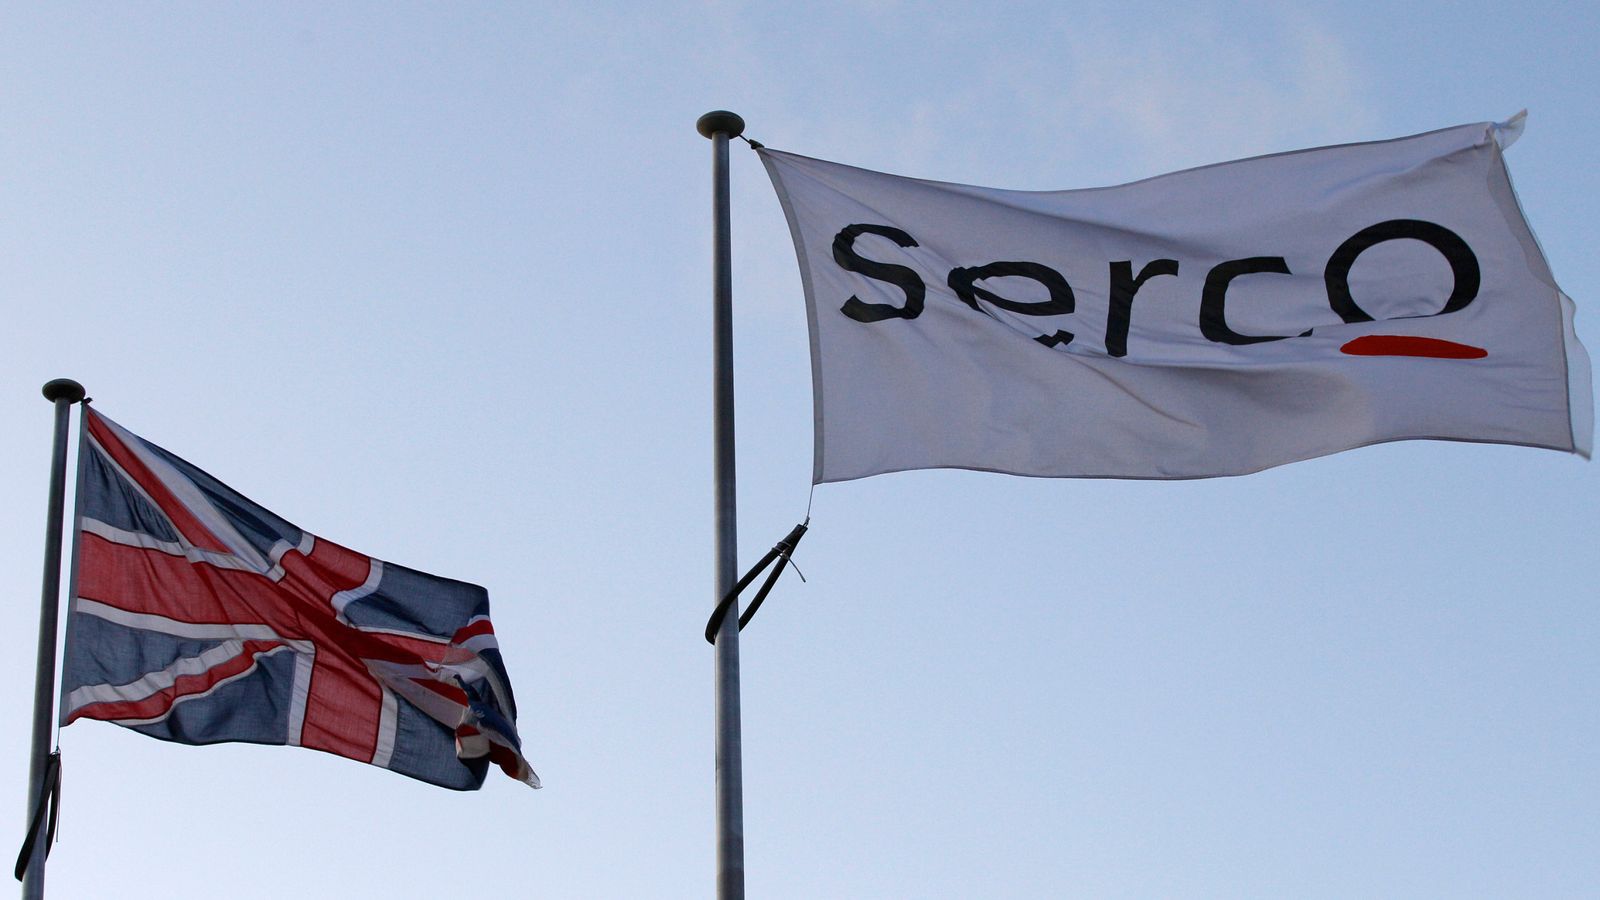   £1bn Serco pension scheme seeks loan from outsourcer amid markets turmoil